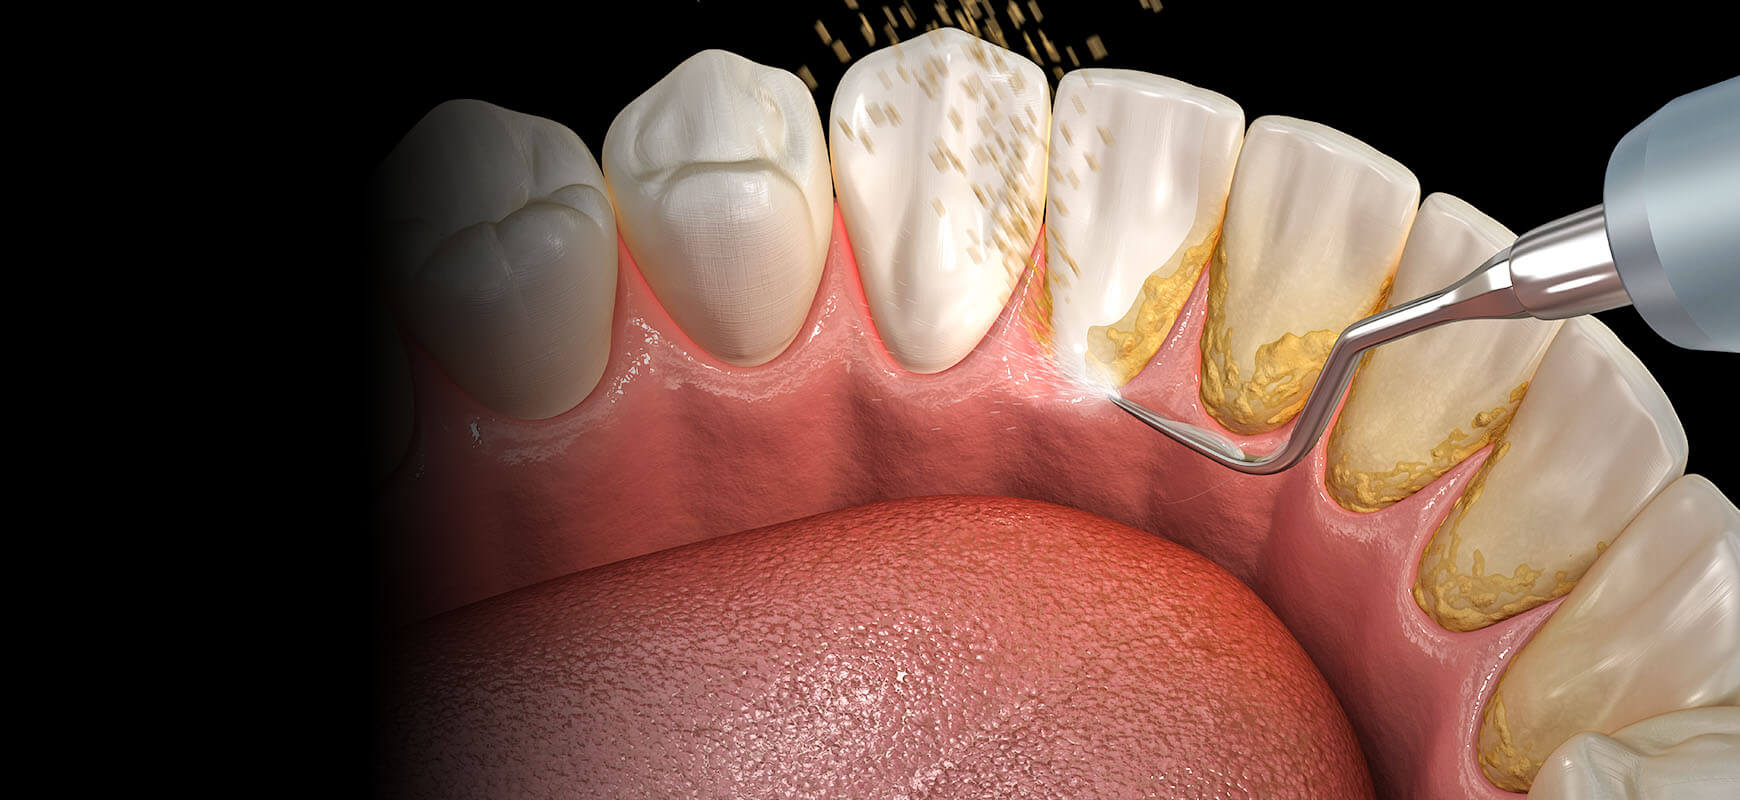 Diş Taşı Temizliği / Tartar Tedavisi